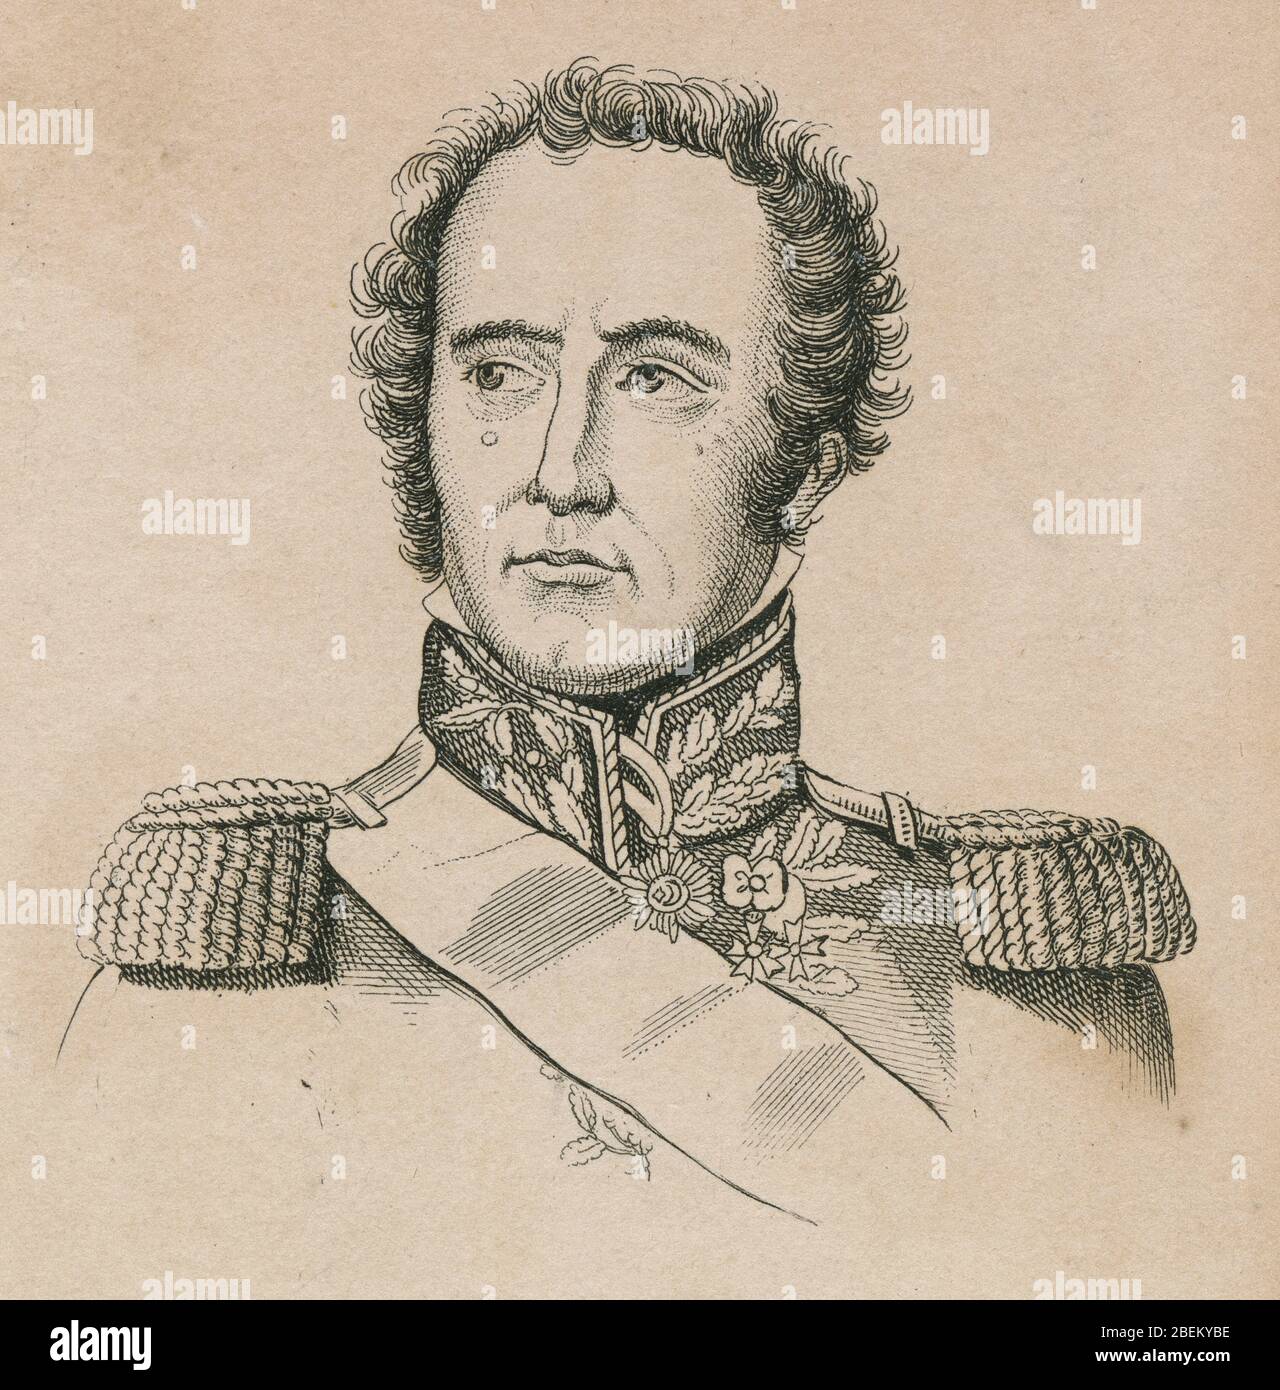 Gravure ancienne, Maximilien Sébastien Foy. Maximilien Sébastien Foy (1775-1825) était un chef militaire français, homme d'État et écrivain. SOURCE: GRAVURE ORIGINALE Banque D'Images